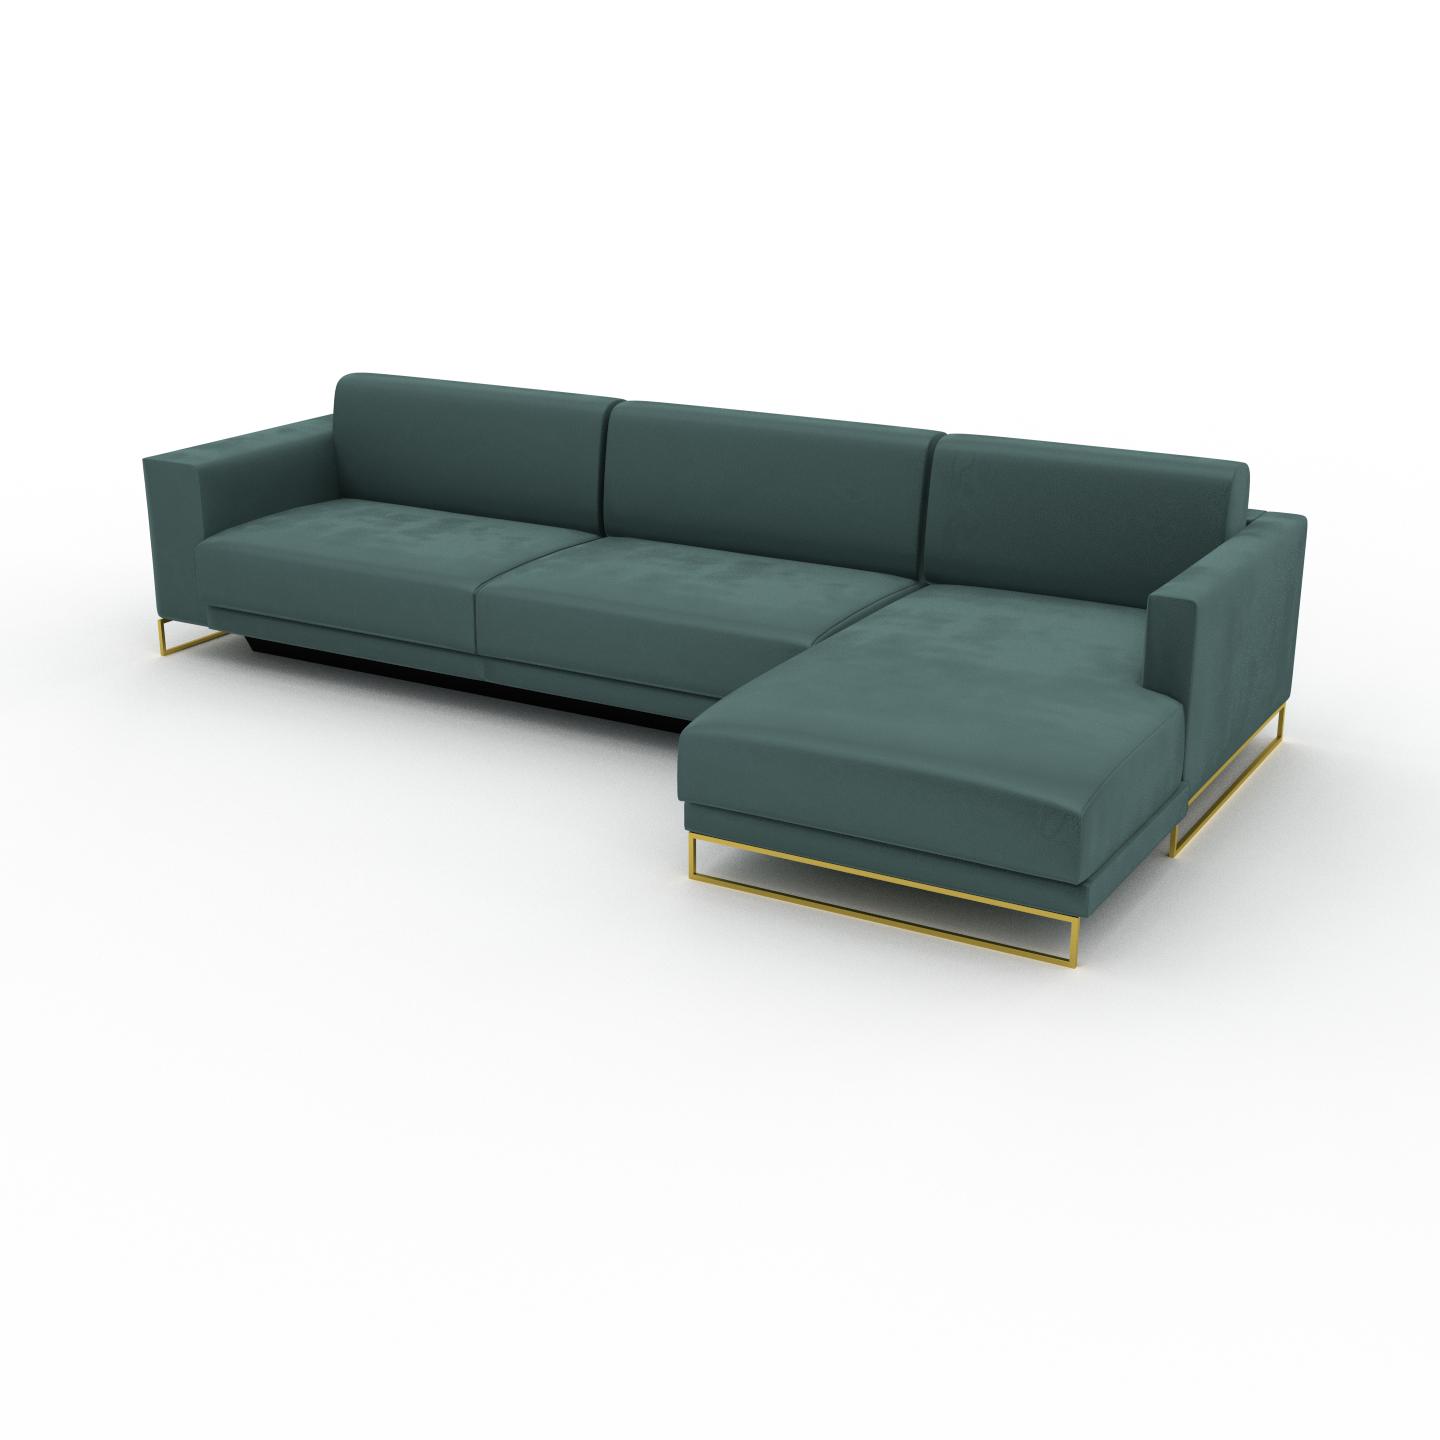 MYCS Ecksofa Samt Blaugrün, mit Gold - Flexible Designer-Polsterecke, L-Form: Beste Qualität, einzigartiges Design - 316 x 75 x 162 cm, konfigurierbar